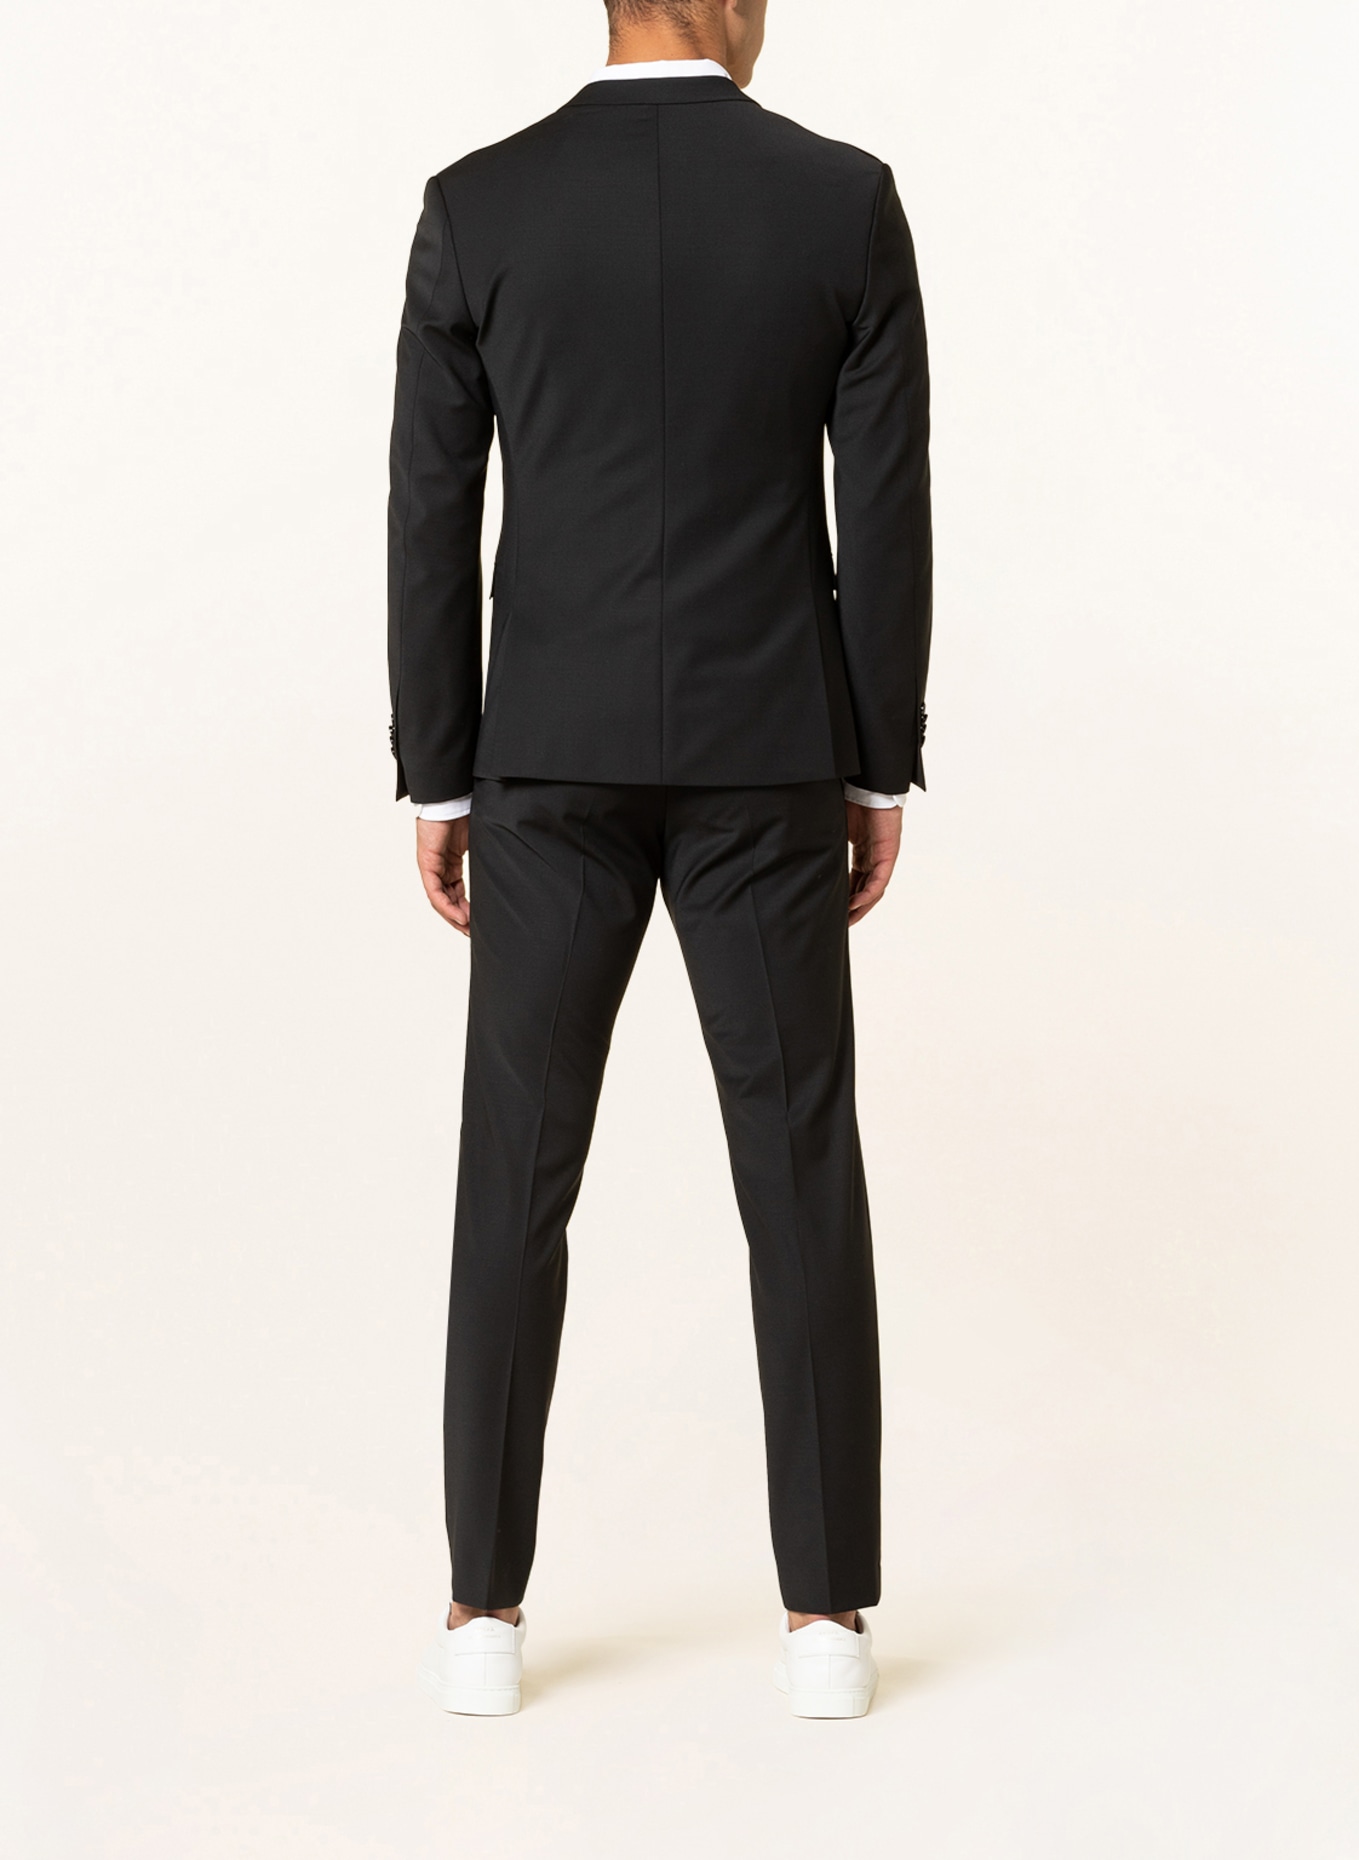 CINQUE Suit jacket CICASTELLO super slim fit, Color: 99 (Image 3)